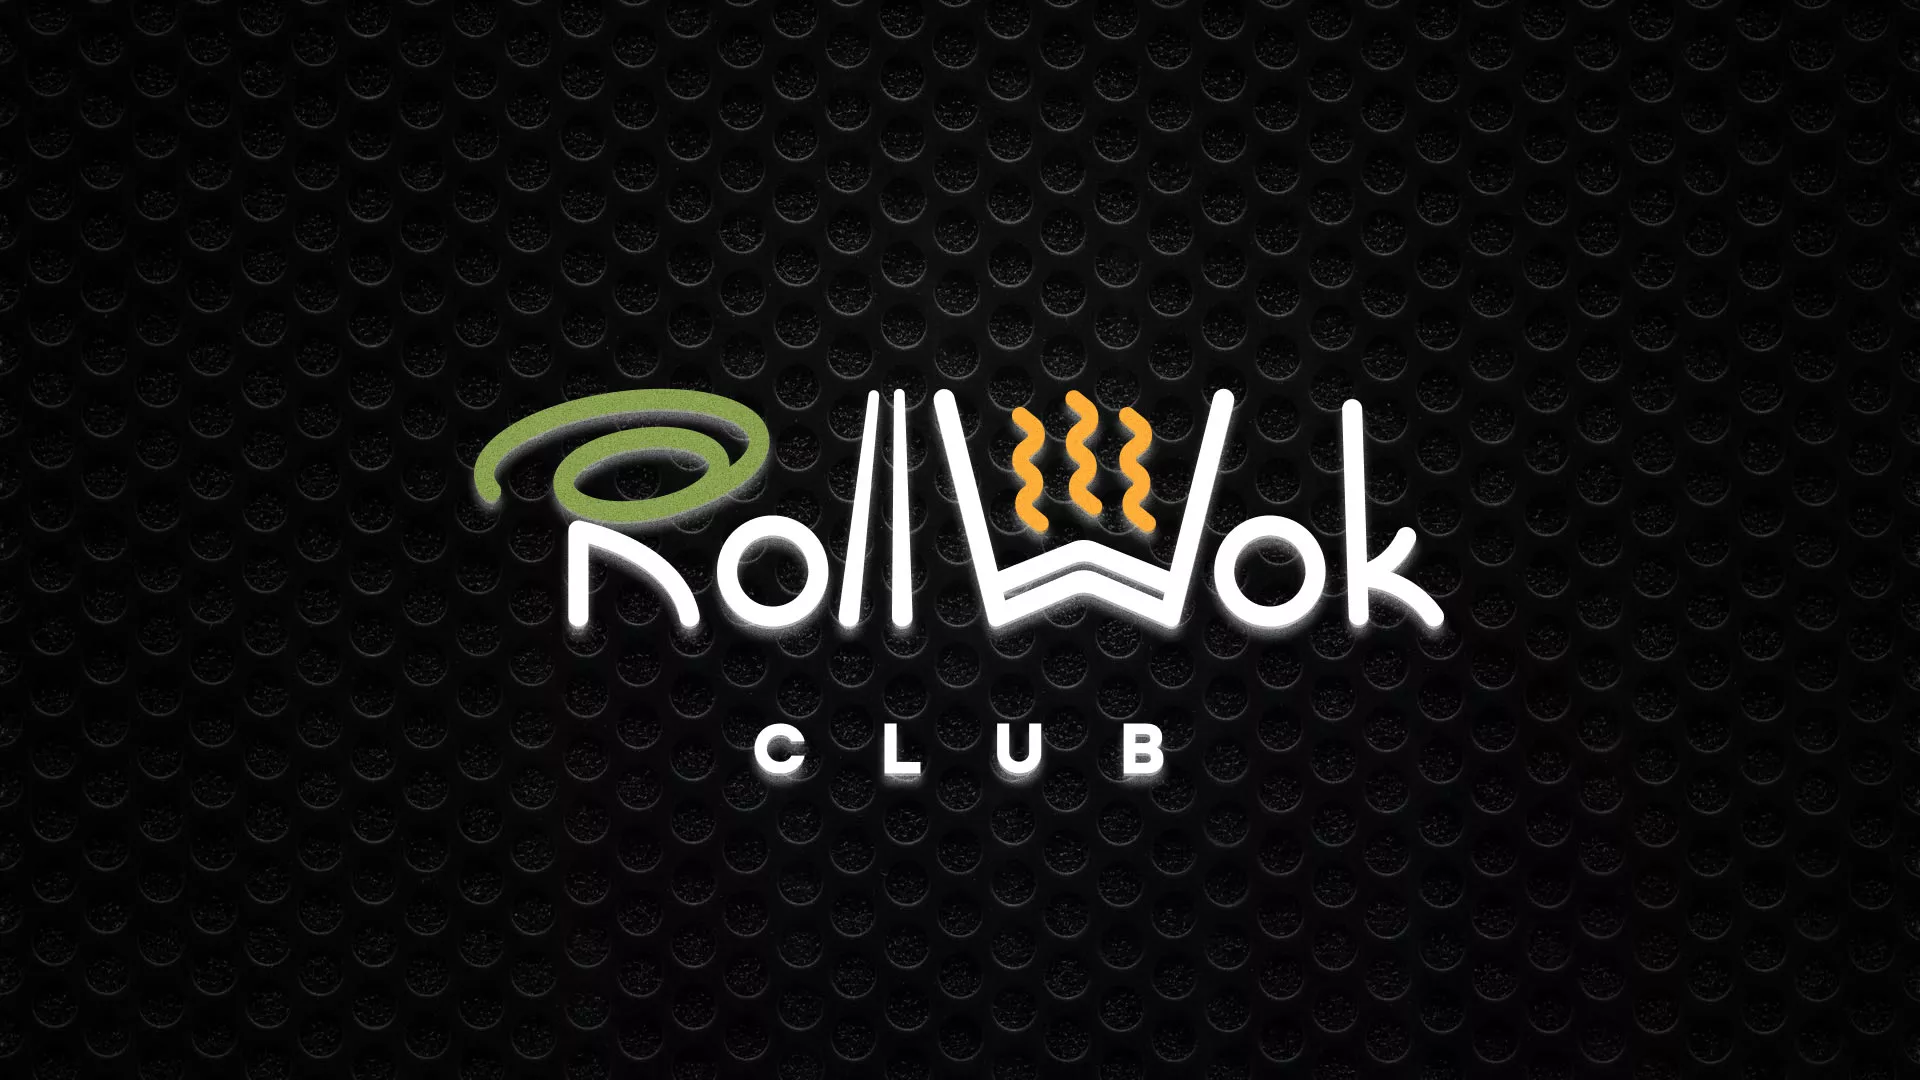 Брендирование торговых точек суши-бара «Roll Wok Club» в Улане-Удэ